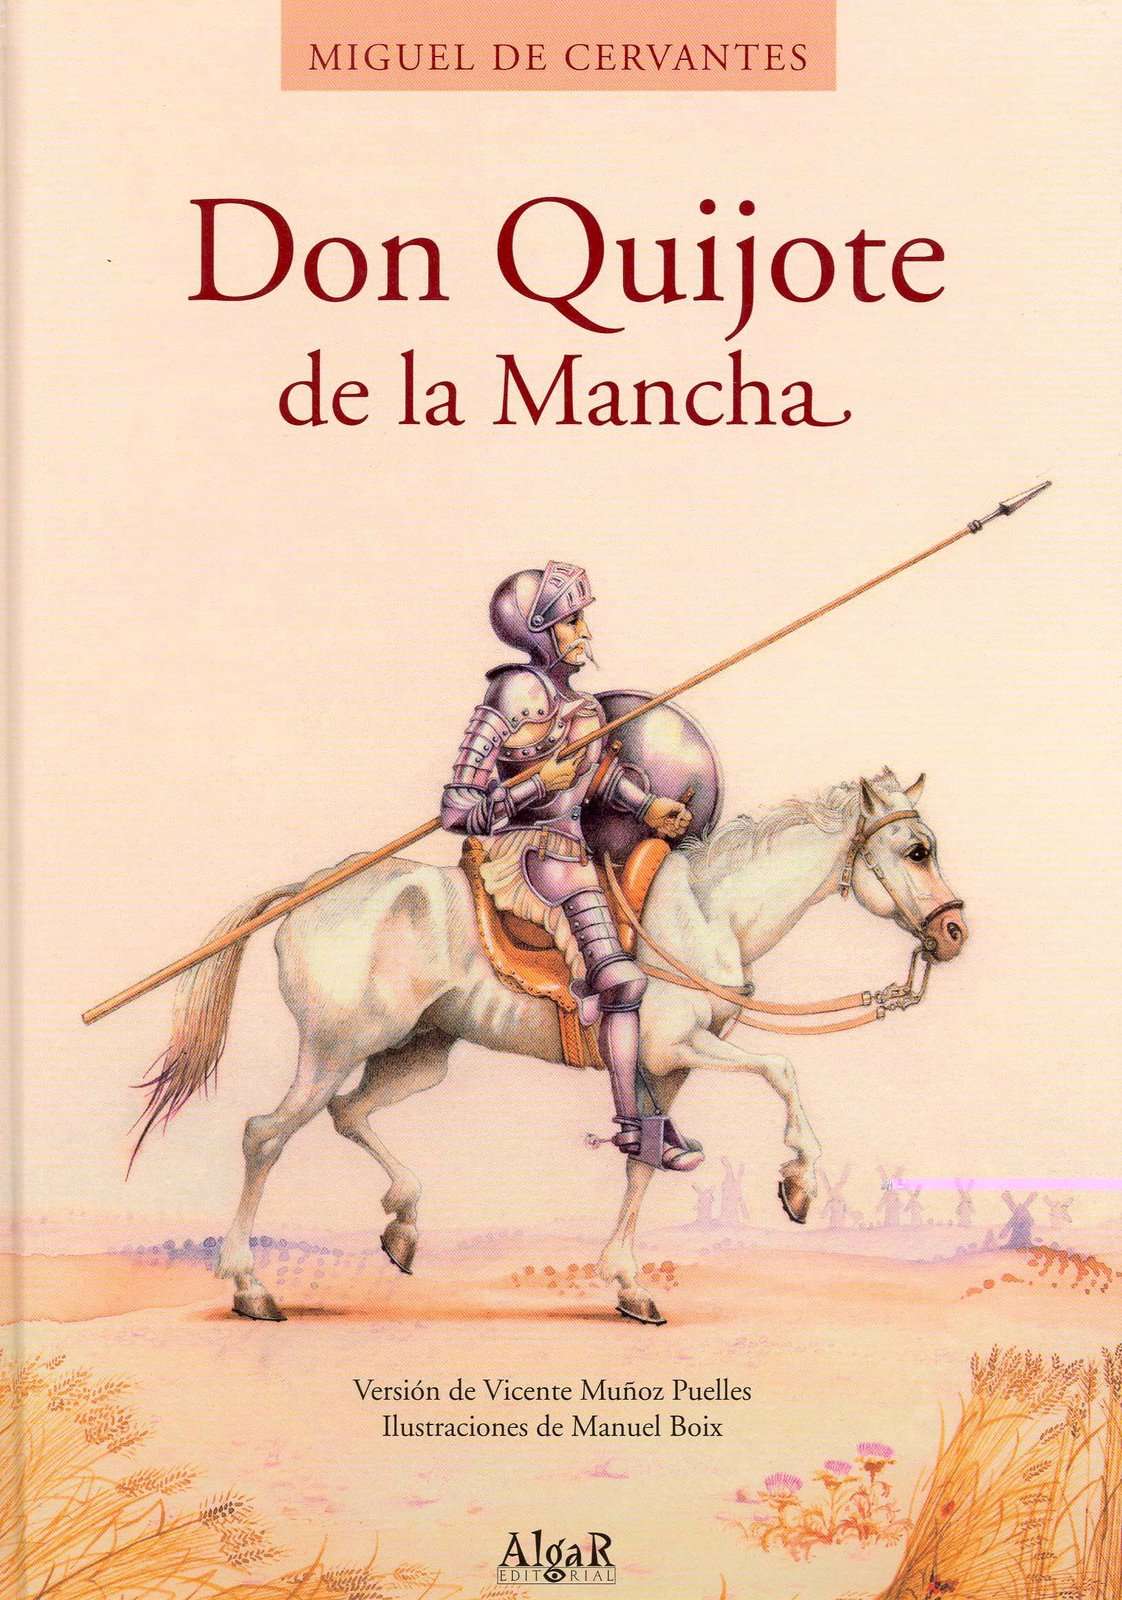 Ο Δον Κιχώτης (πρωτότυπος τίτλος: El ingenioso hidalgo Don Quixote de la Mancha, σύγχρονος τίτλος: El ingenioso hidalgo Don Quijote de la Mancha, κυριολεκτικά: Ο ευφάνταστος ευπατρίδης Δον Κιχώτης της Μάντσας) είναι κλασικό έργο λογοτεχνίας του Ισπανού συγγραφέα Μιγκέλ ντε Θερβάντες Σααβέδρα (Miguel de Cervantes Saavedra).